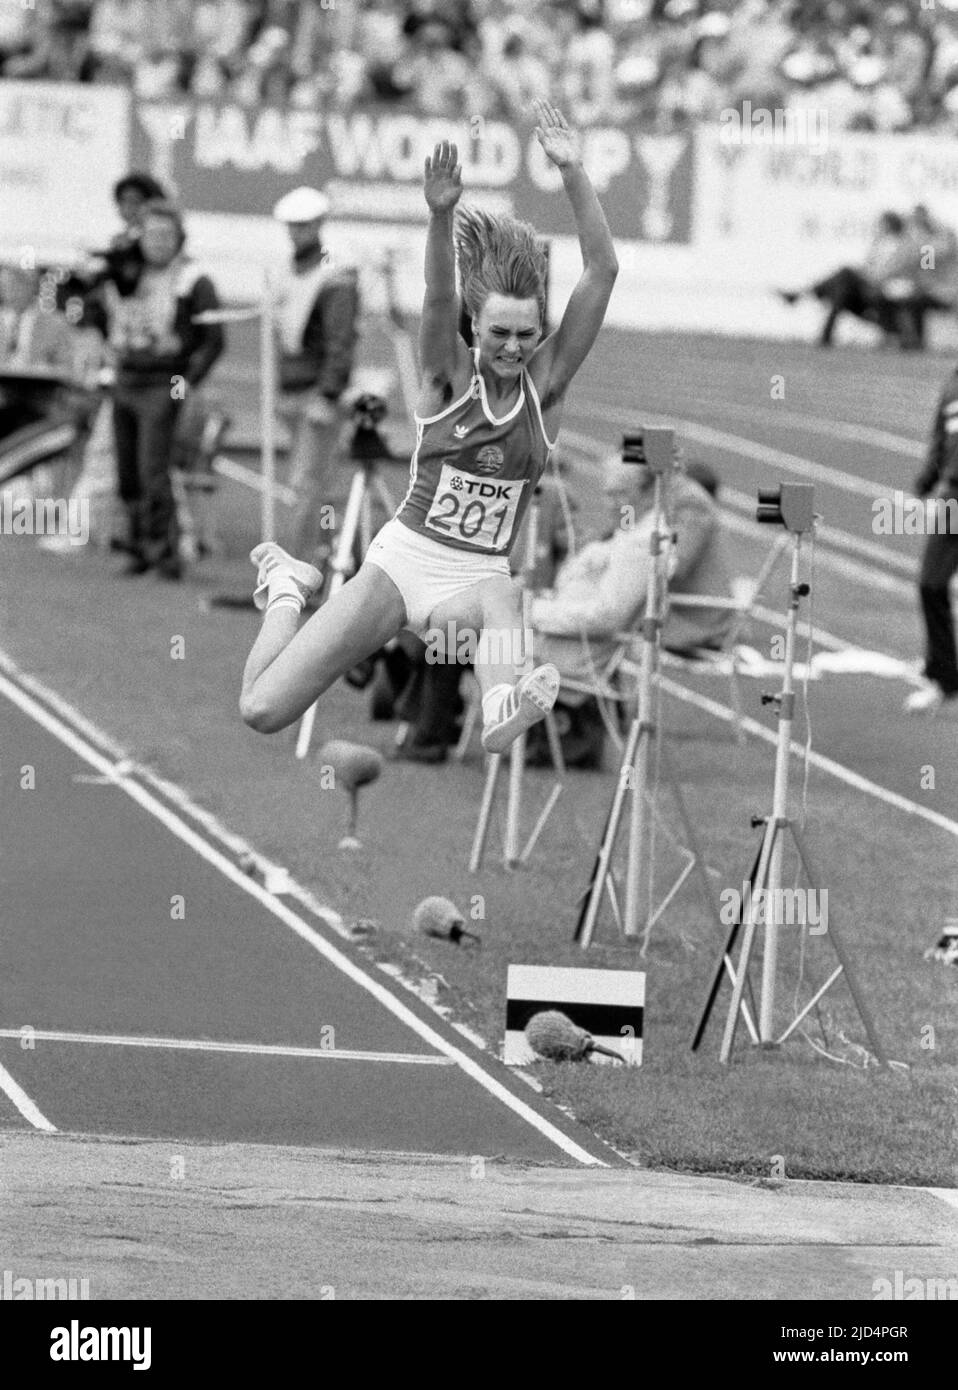 HEIKE DAUTE FRG-Athletin bei der IAAF-Weltmeisterschaft nimmt Teil und gewinnt den Weitsprung in Helsinki Finnland am 1983. august Stockfoto